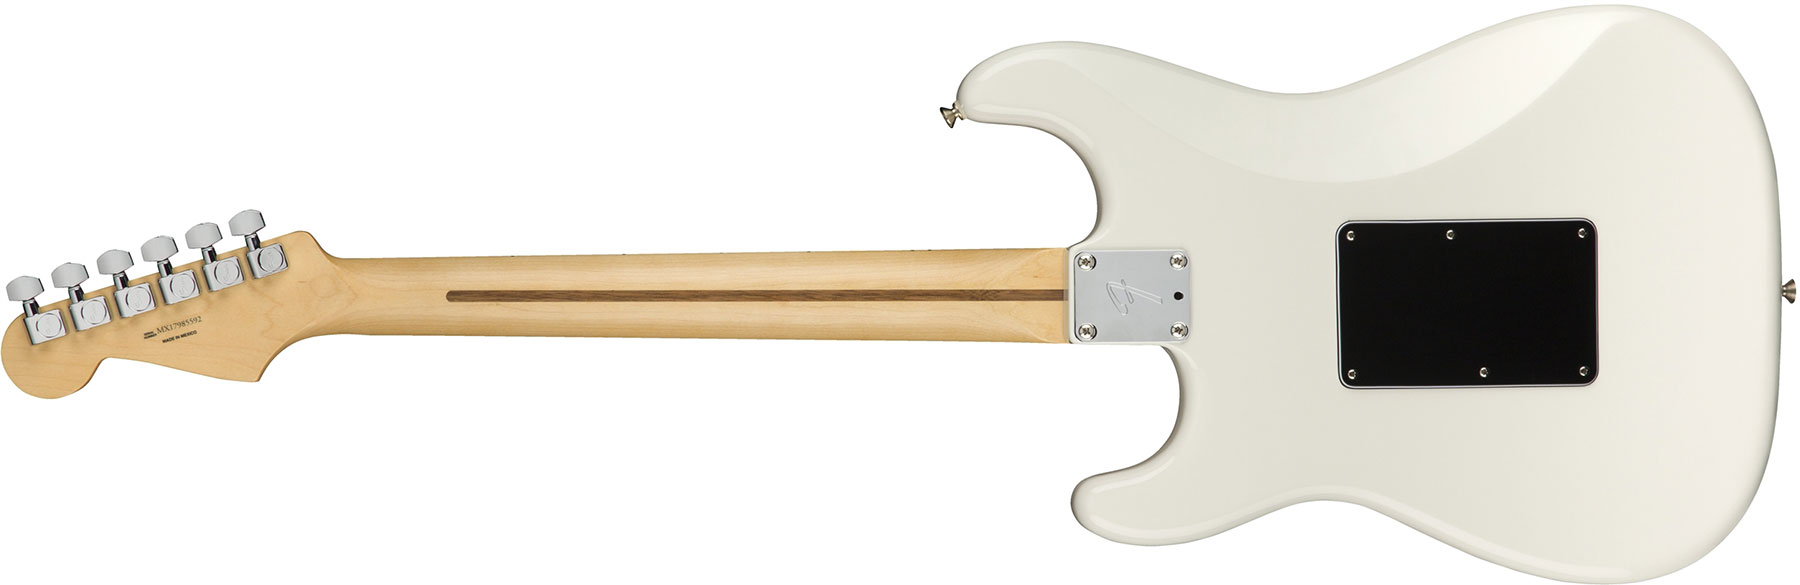 Fender Strat Player Floyd Rose Mex Hss Fr Mn - Polar White - E-Gitarre in Str-Form - Variation 1